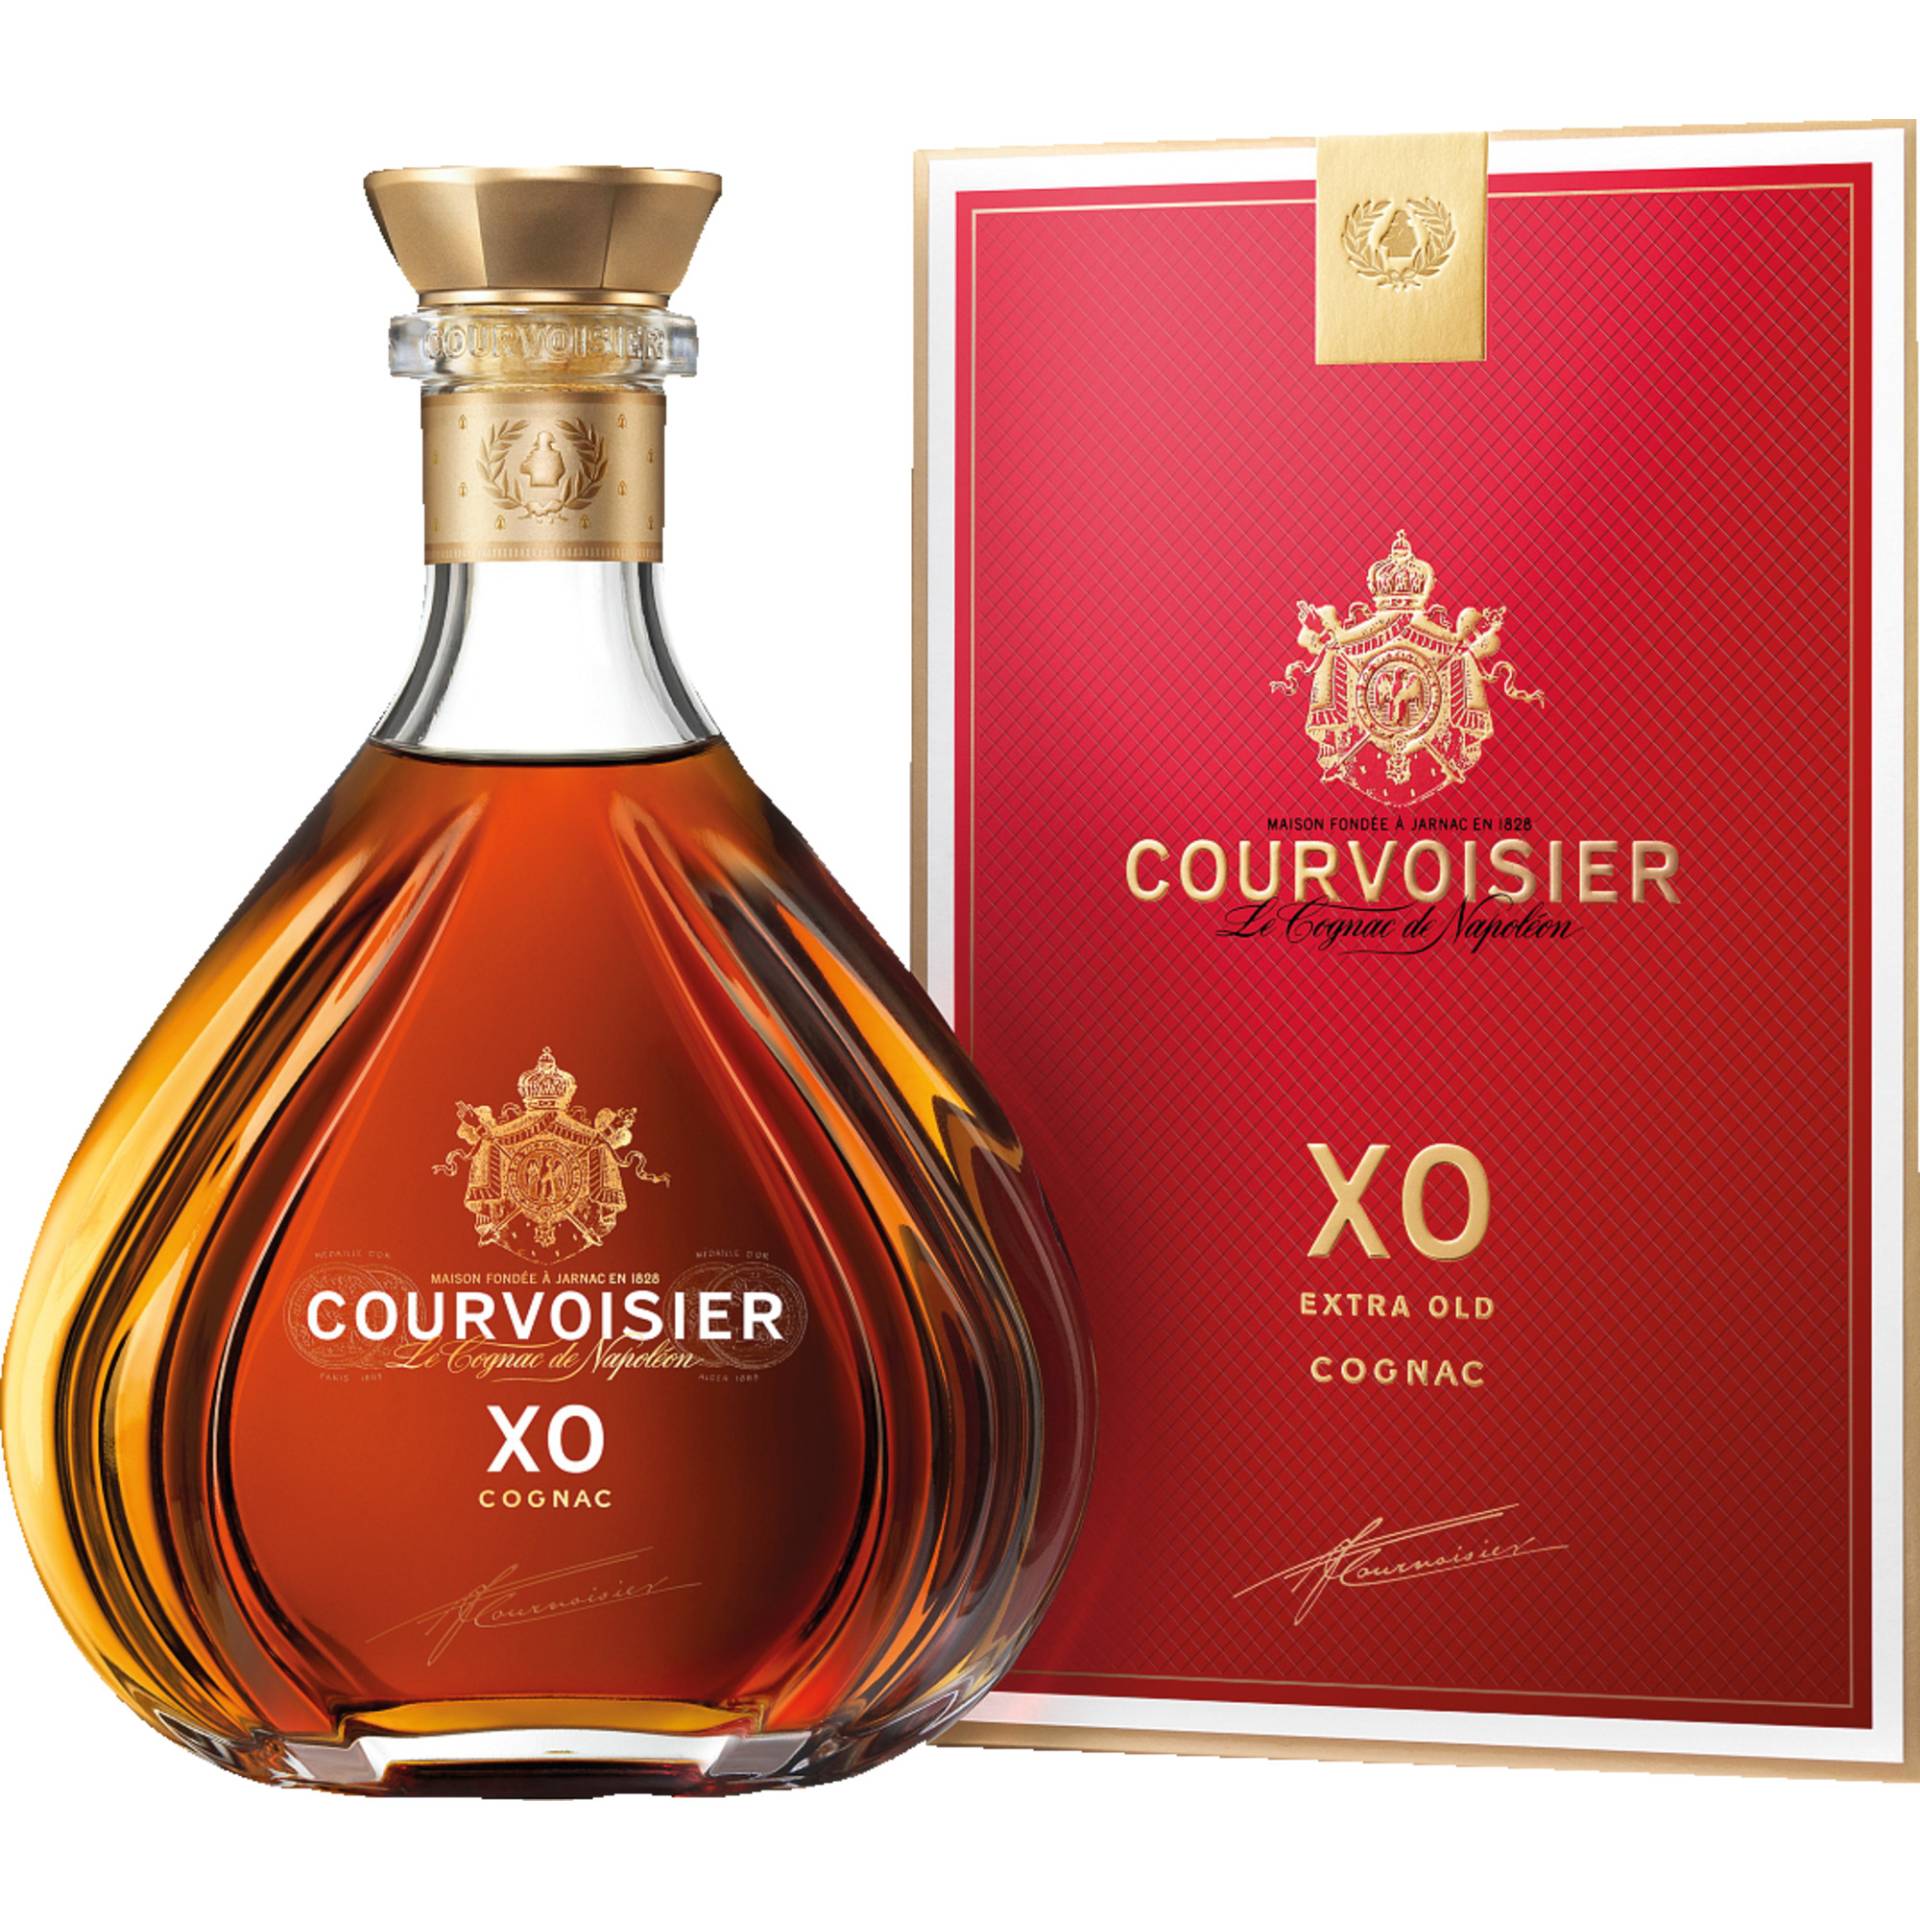 Courvoisier XO, Cognac AOP 40 % vol. 0,7 L, Cognac, Spirituosen von Courvoisier, 2 Place du Chateau, 16200 Jarnac, France